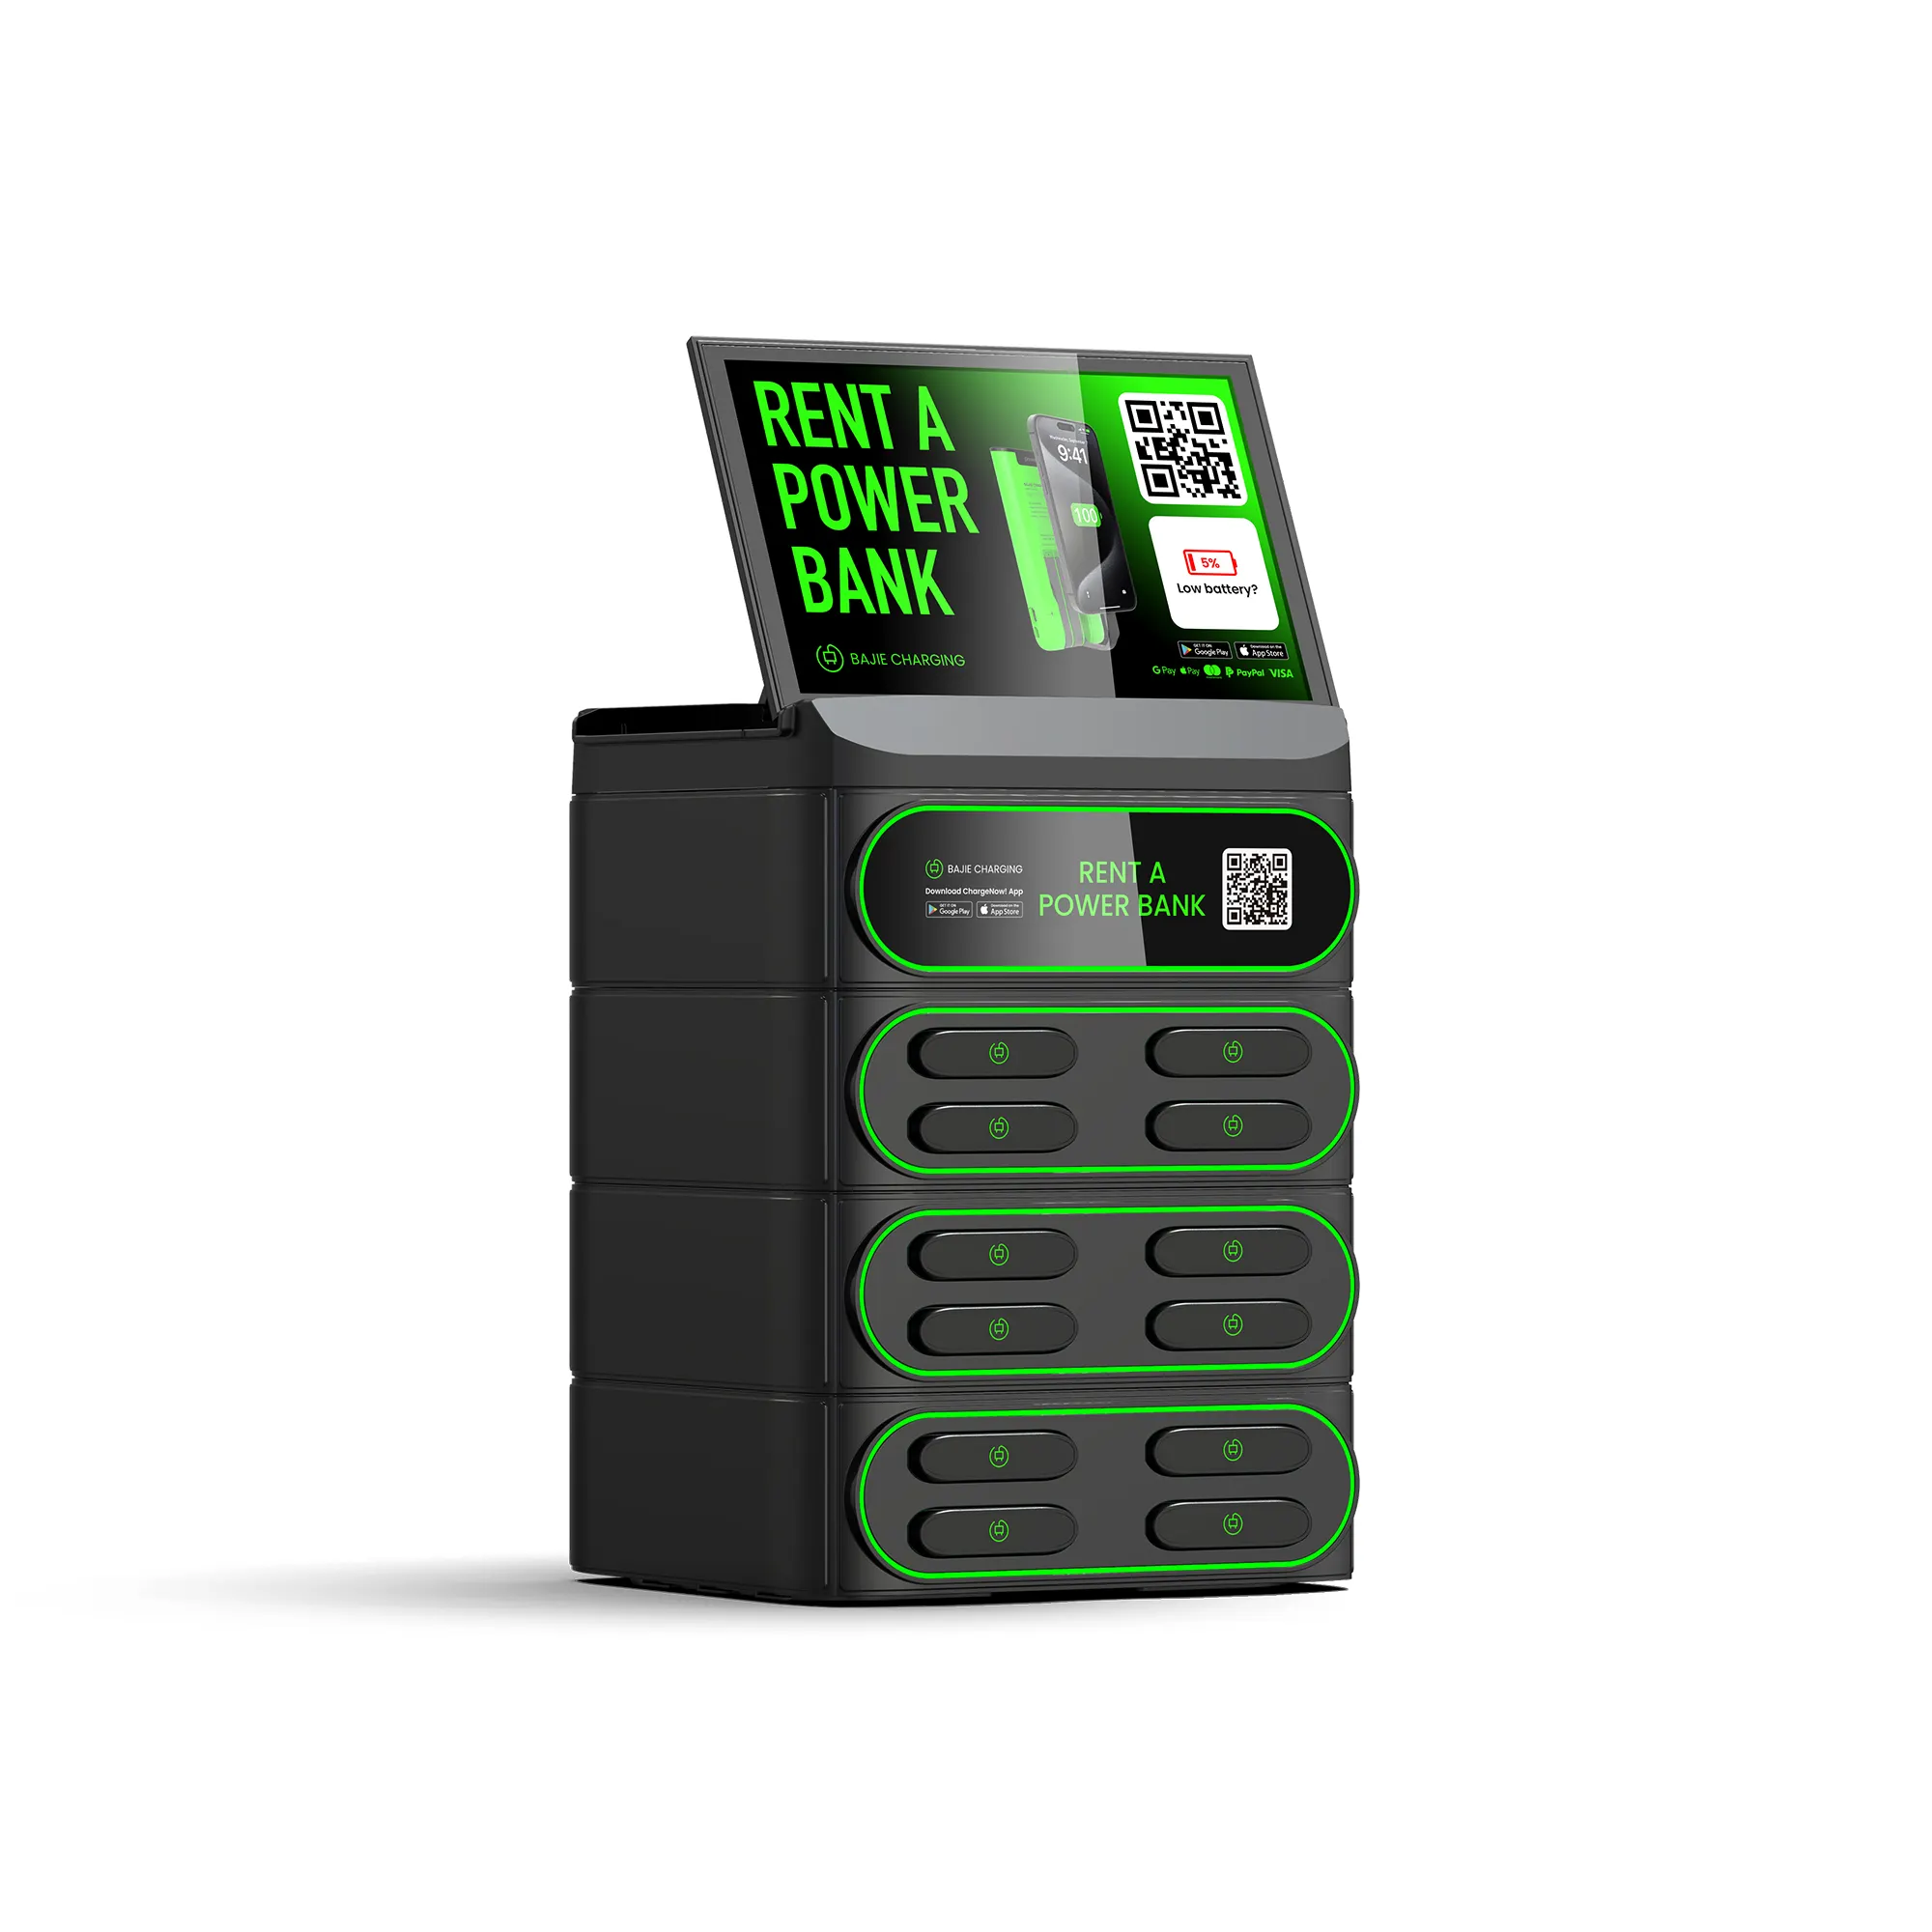 4g condividere la ricarica mobile mobile mobile condivisione power bank station 5000mAh batteria condiviso fornitore di power bank